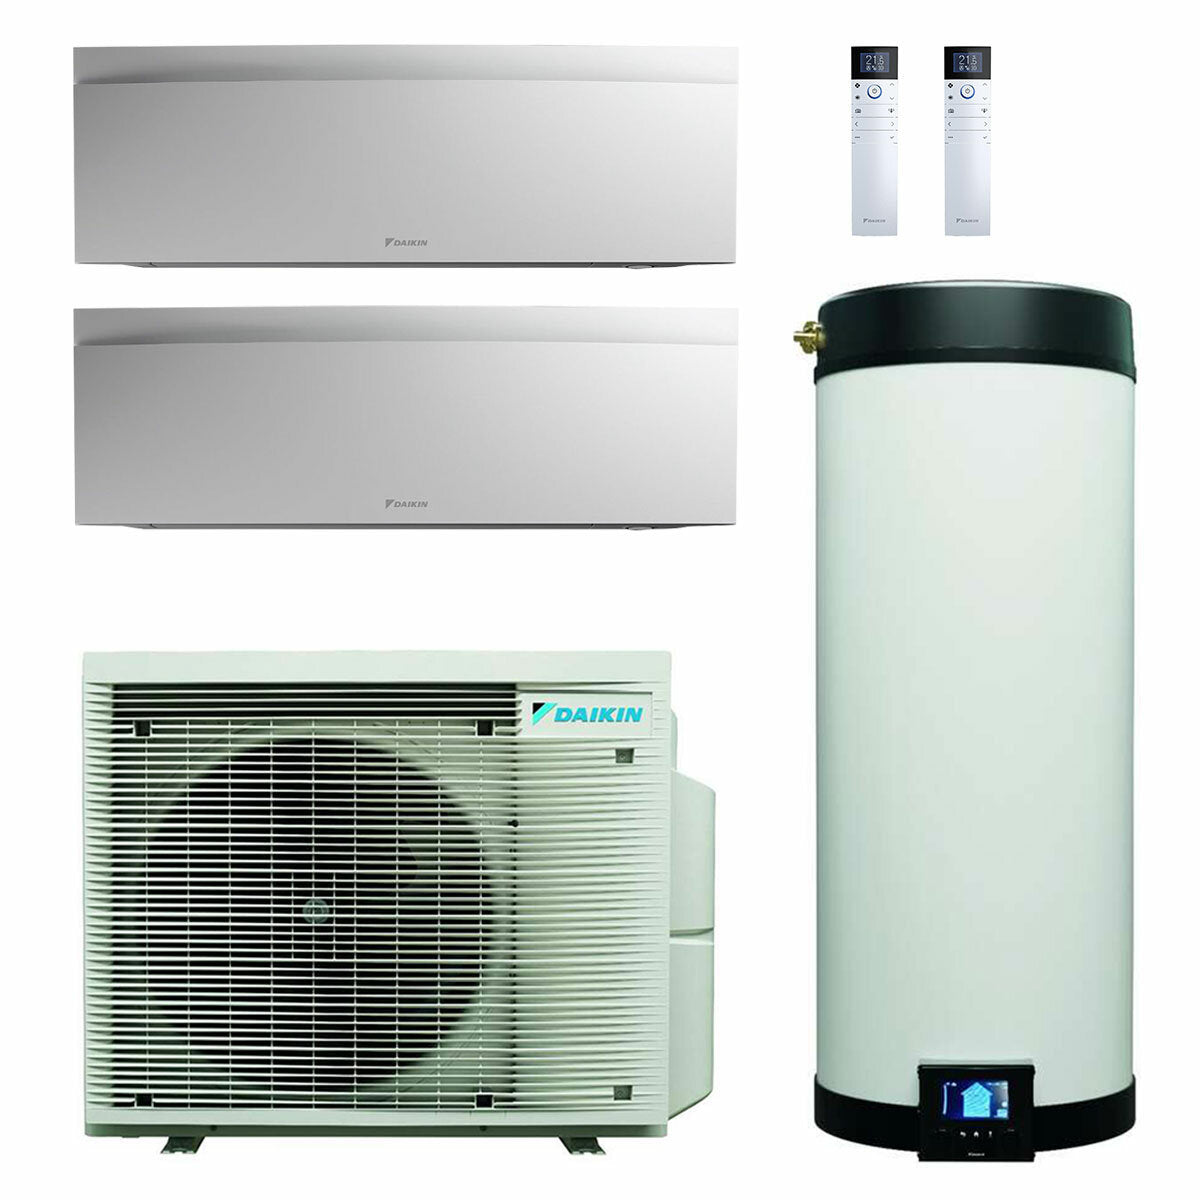 Système de climatisation double split Daikin Multi+ et eau chaude sanitaire - Unités intérieures Emura 3 blanc 12000+12000 BTU - Réservoir 120 l